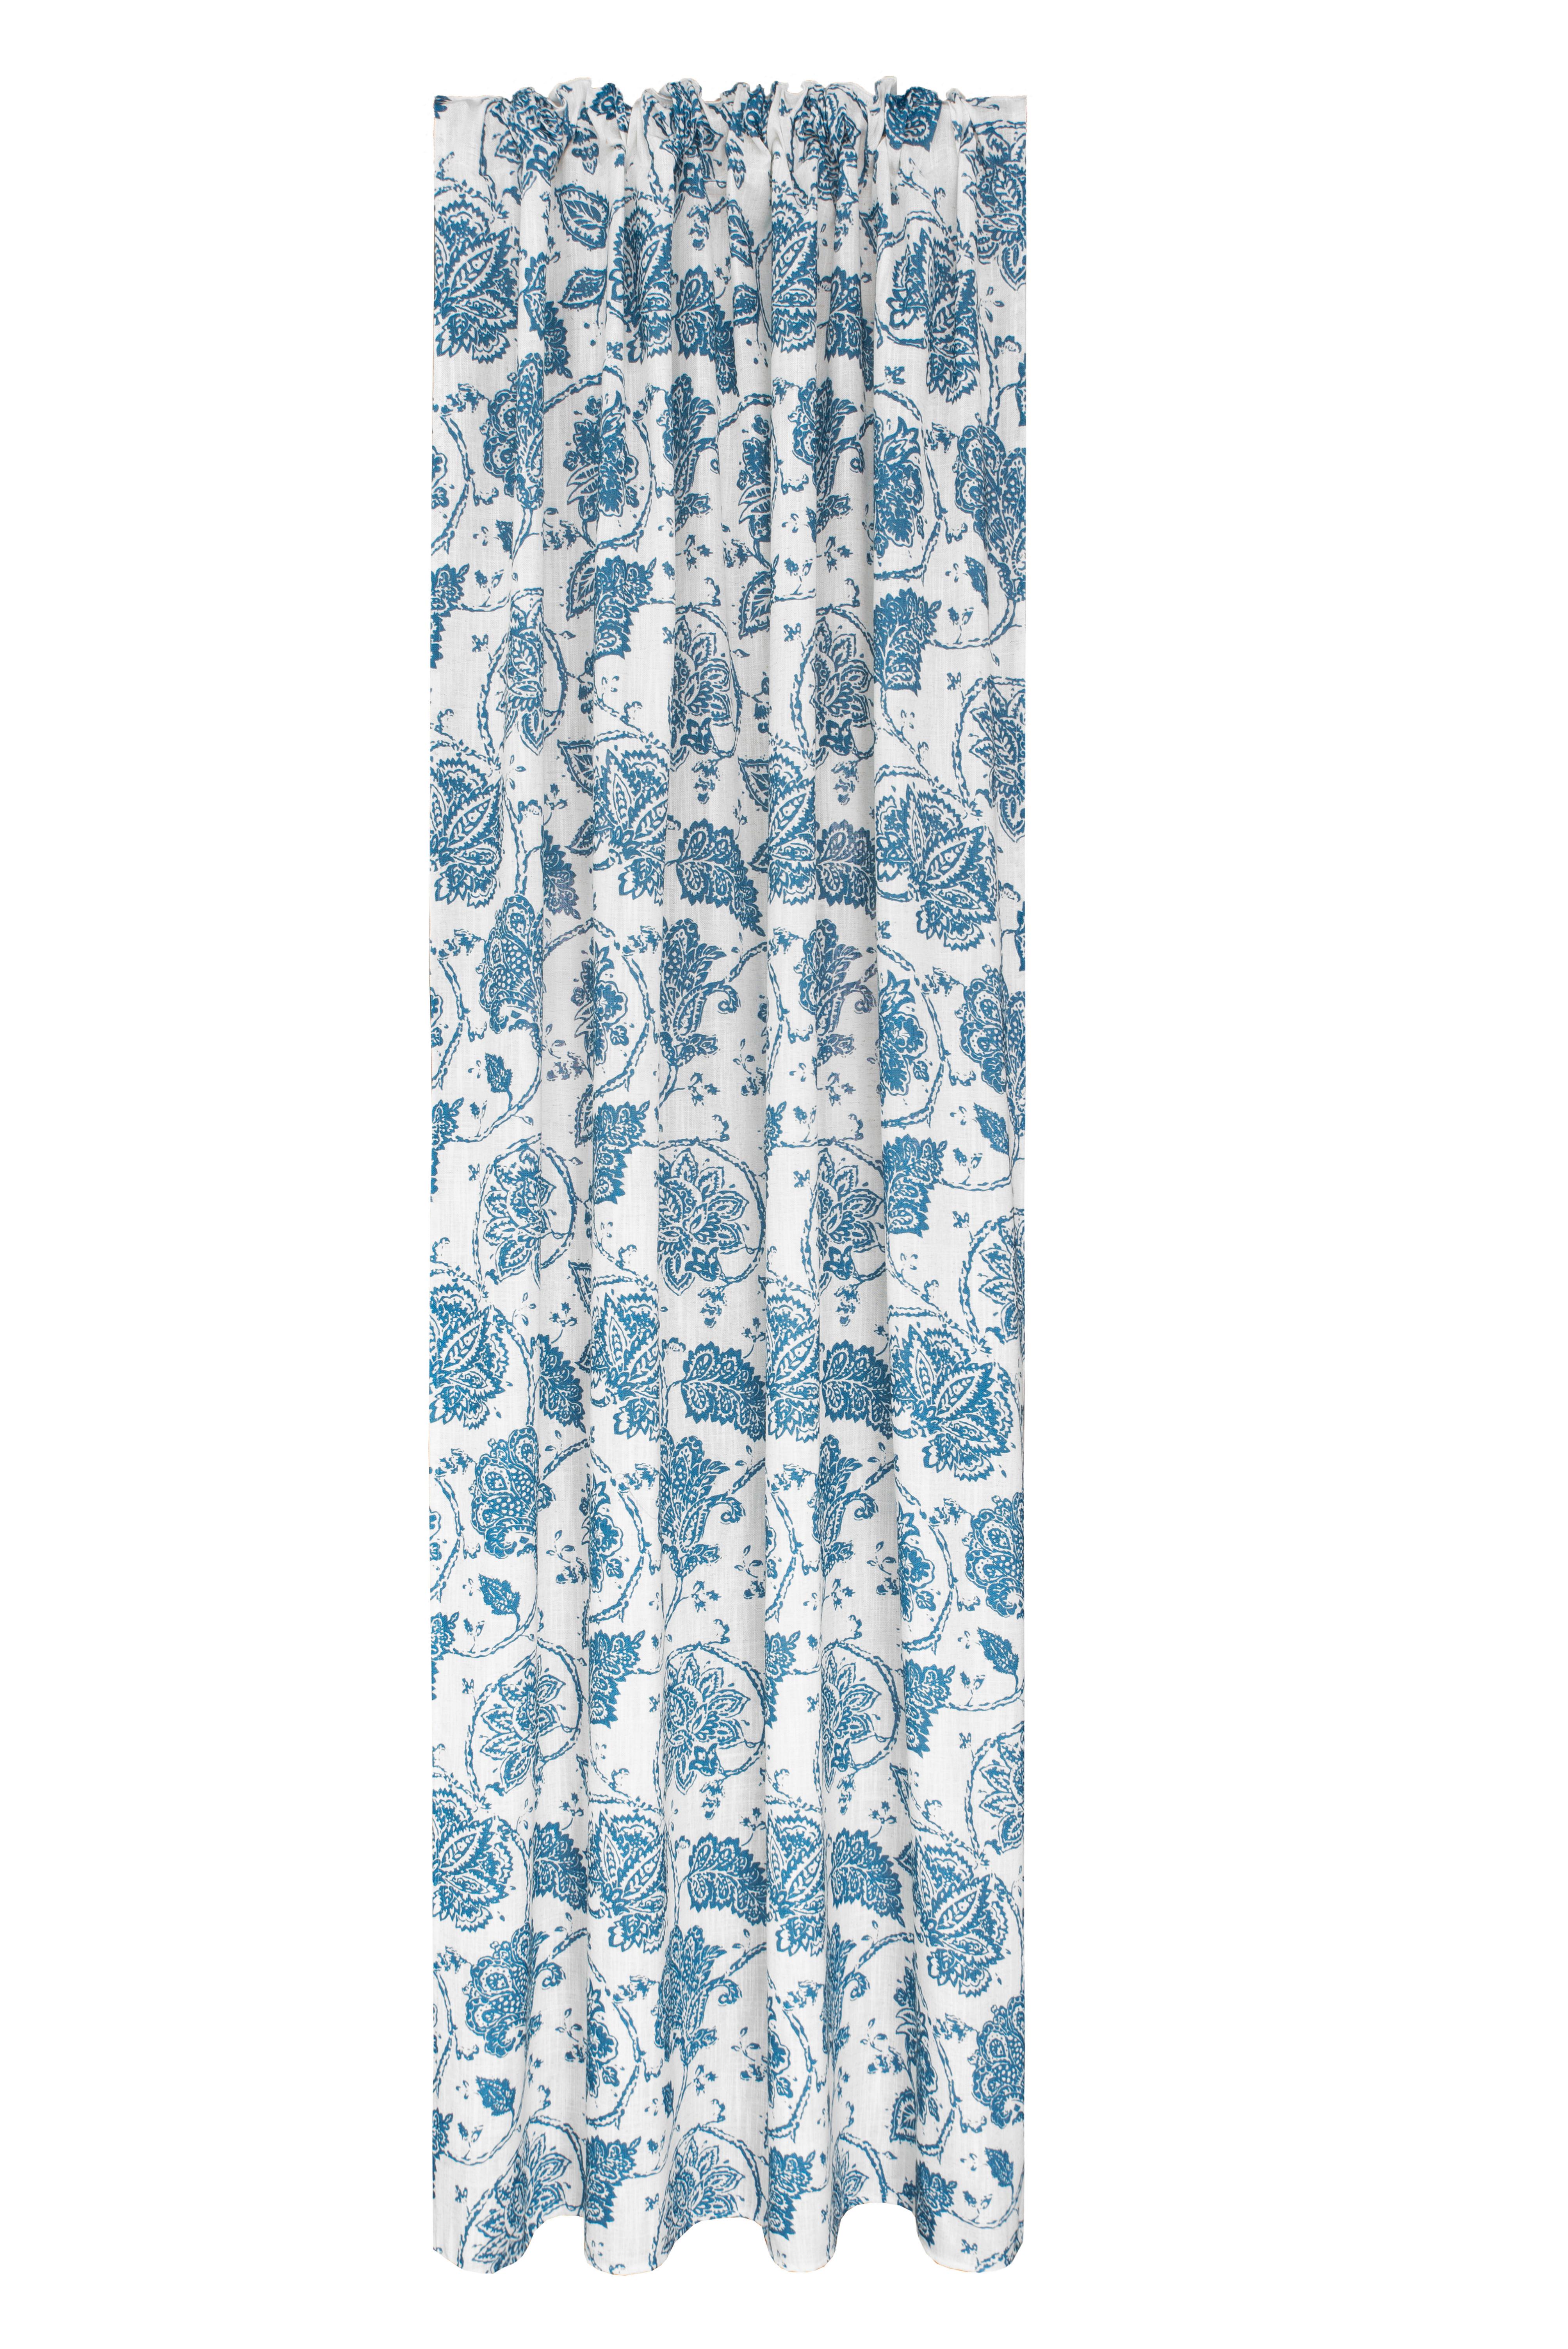 Készfüggöny Irma - Kék, romantikus/Landhaus, Textil (140/245cm) - James Wood